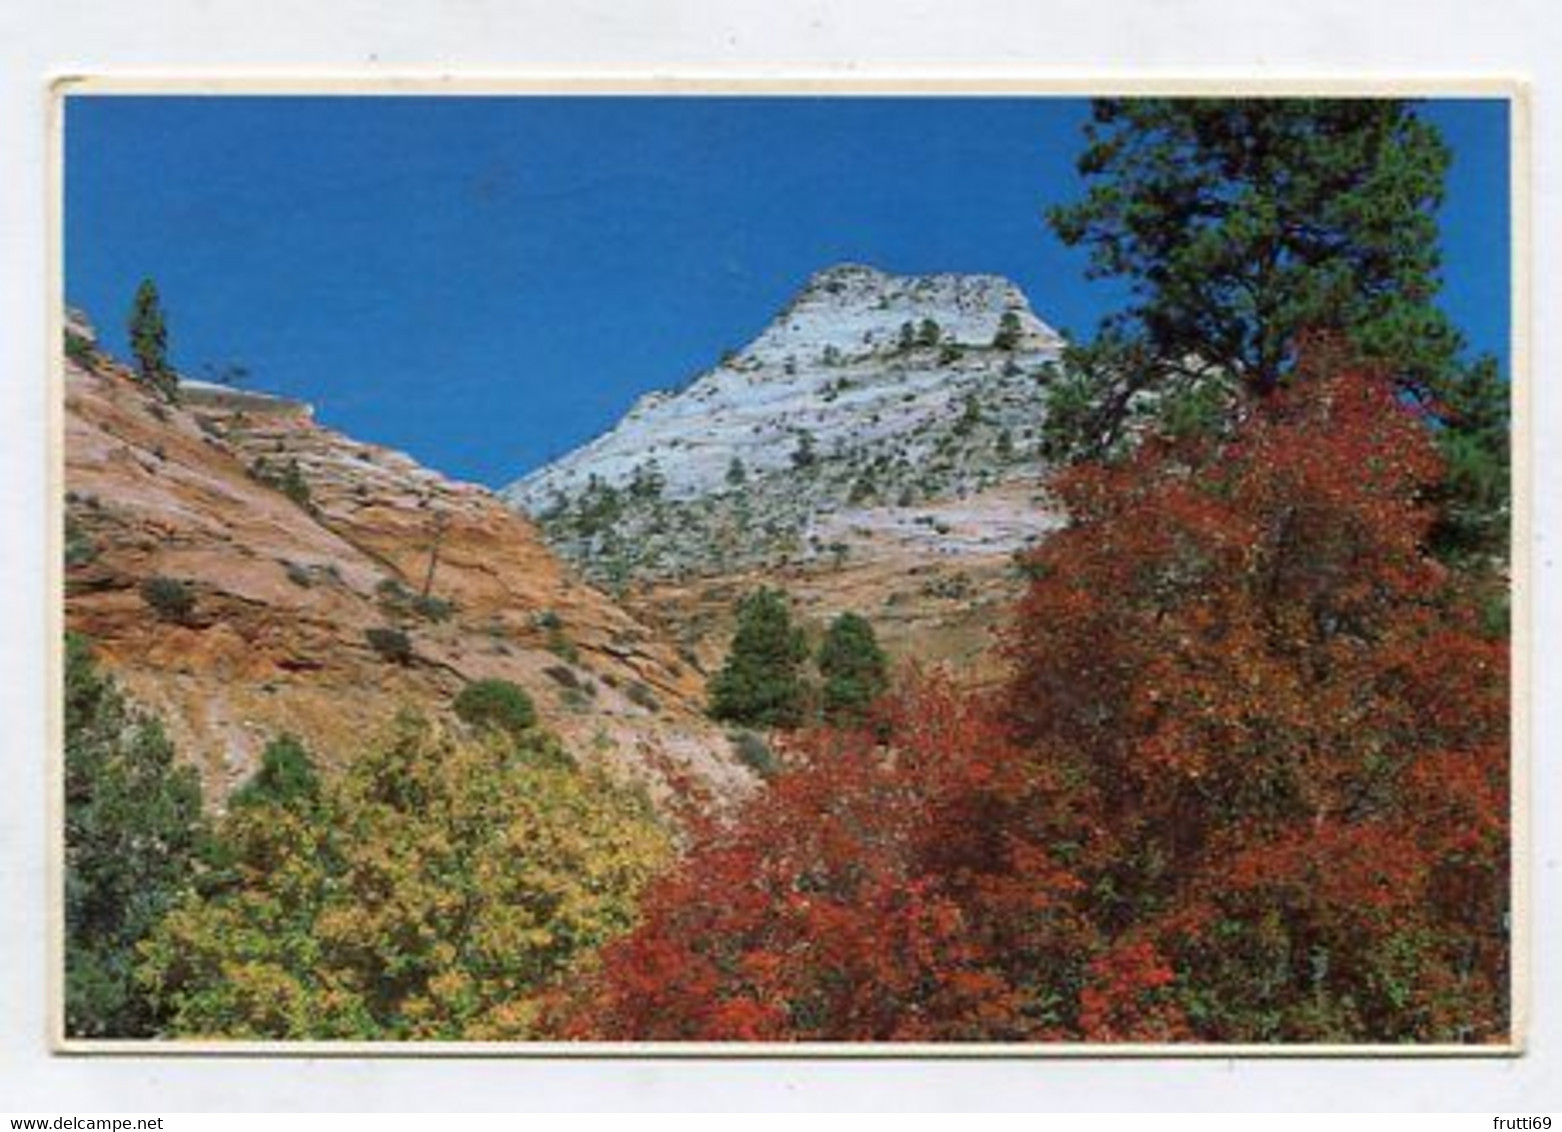 AK 095016 USA - Utah - Zion National Park - Checkerboard Mesa - Zion